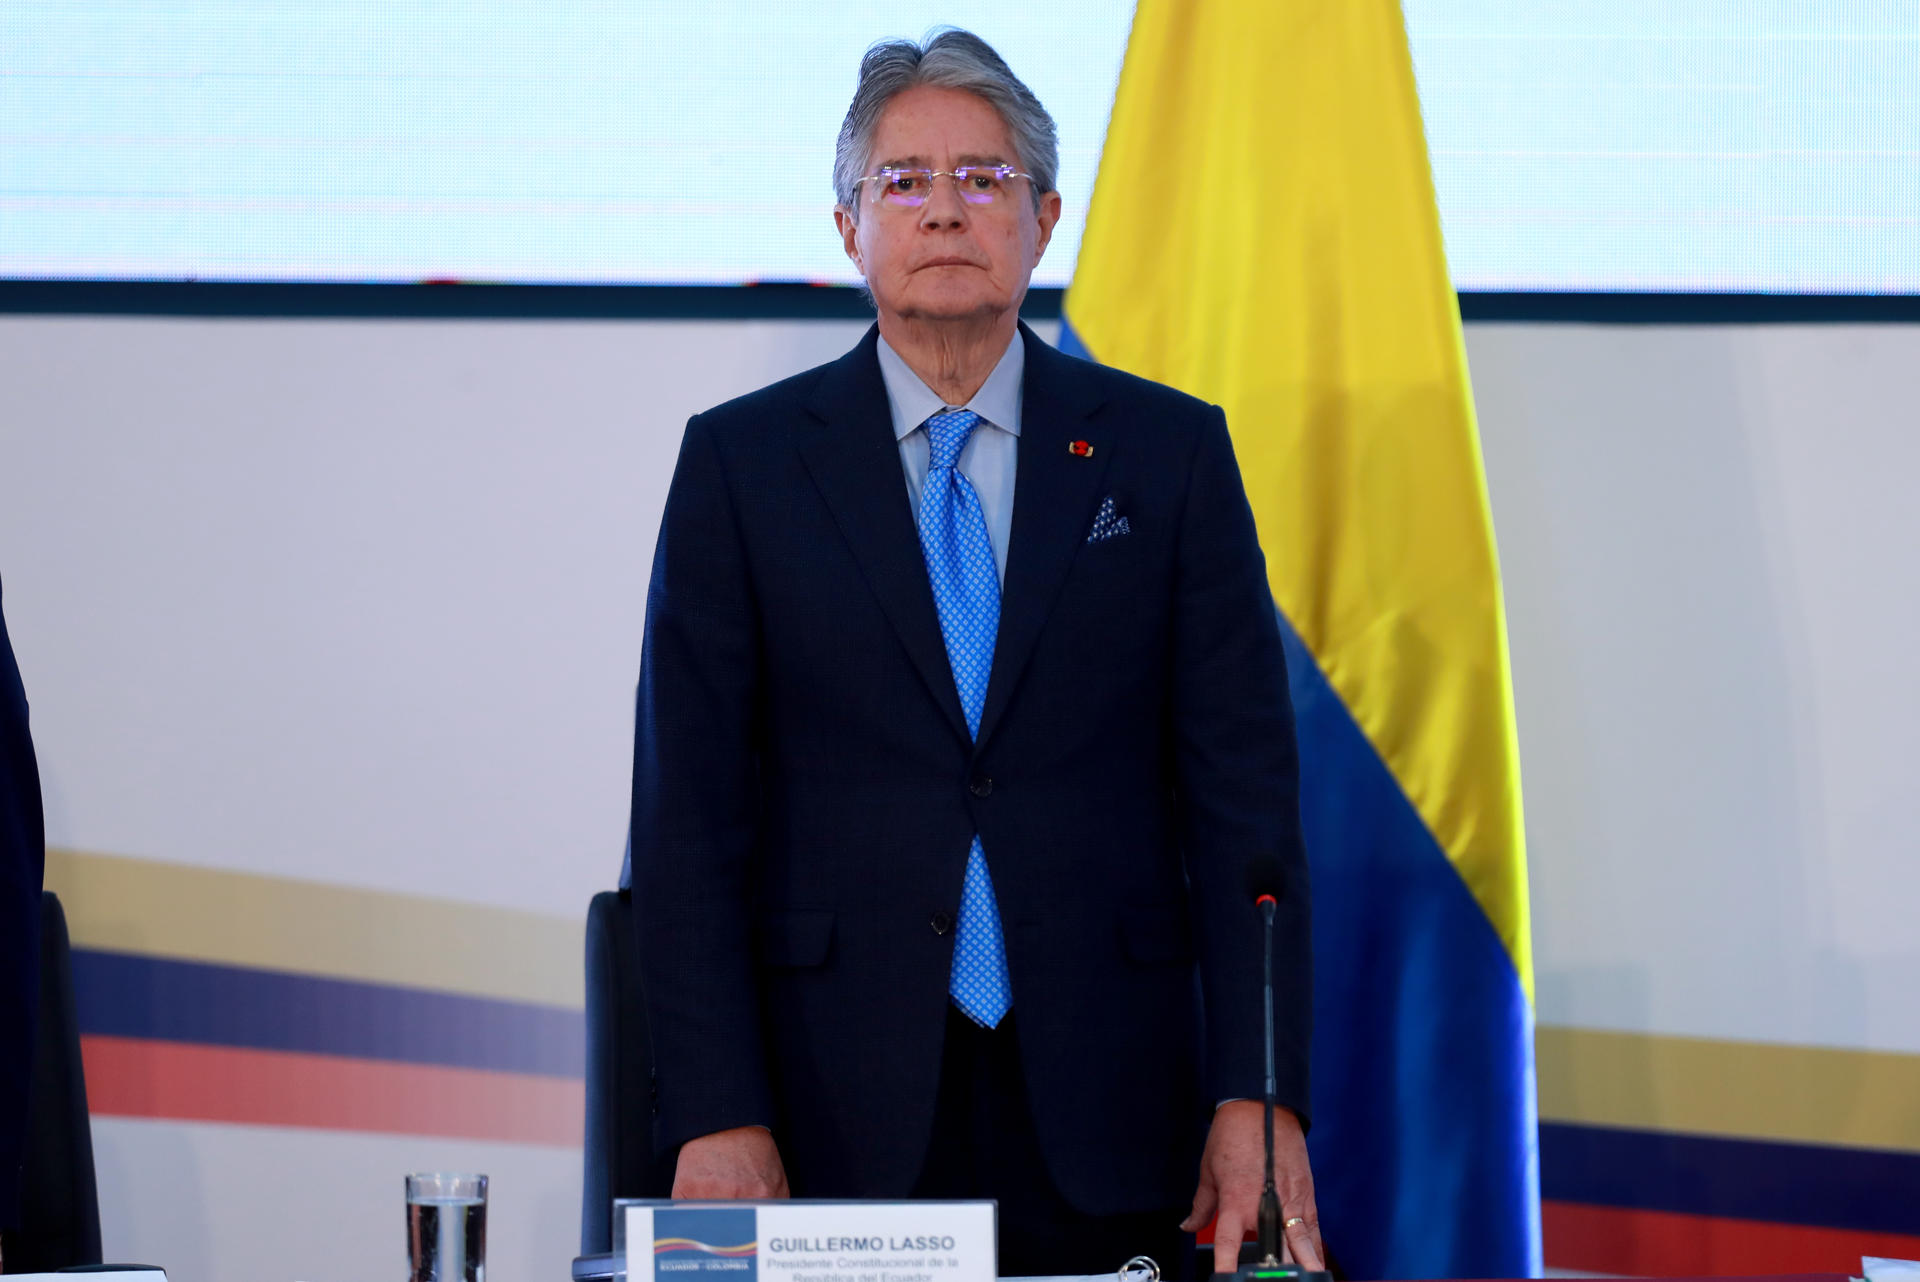 El presidente de Ecuador comparecerá ante una Asamblea de mayoría opositora por un juicio político